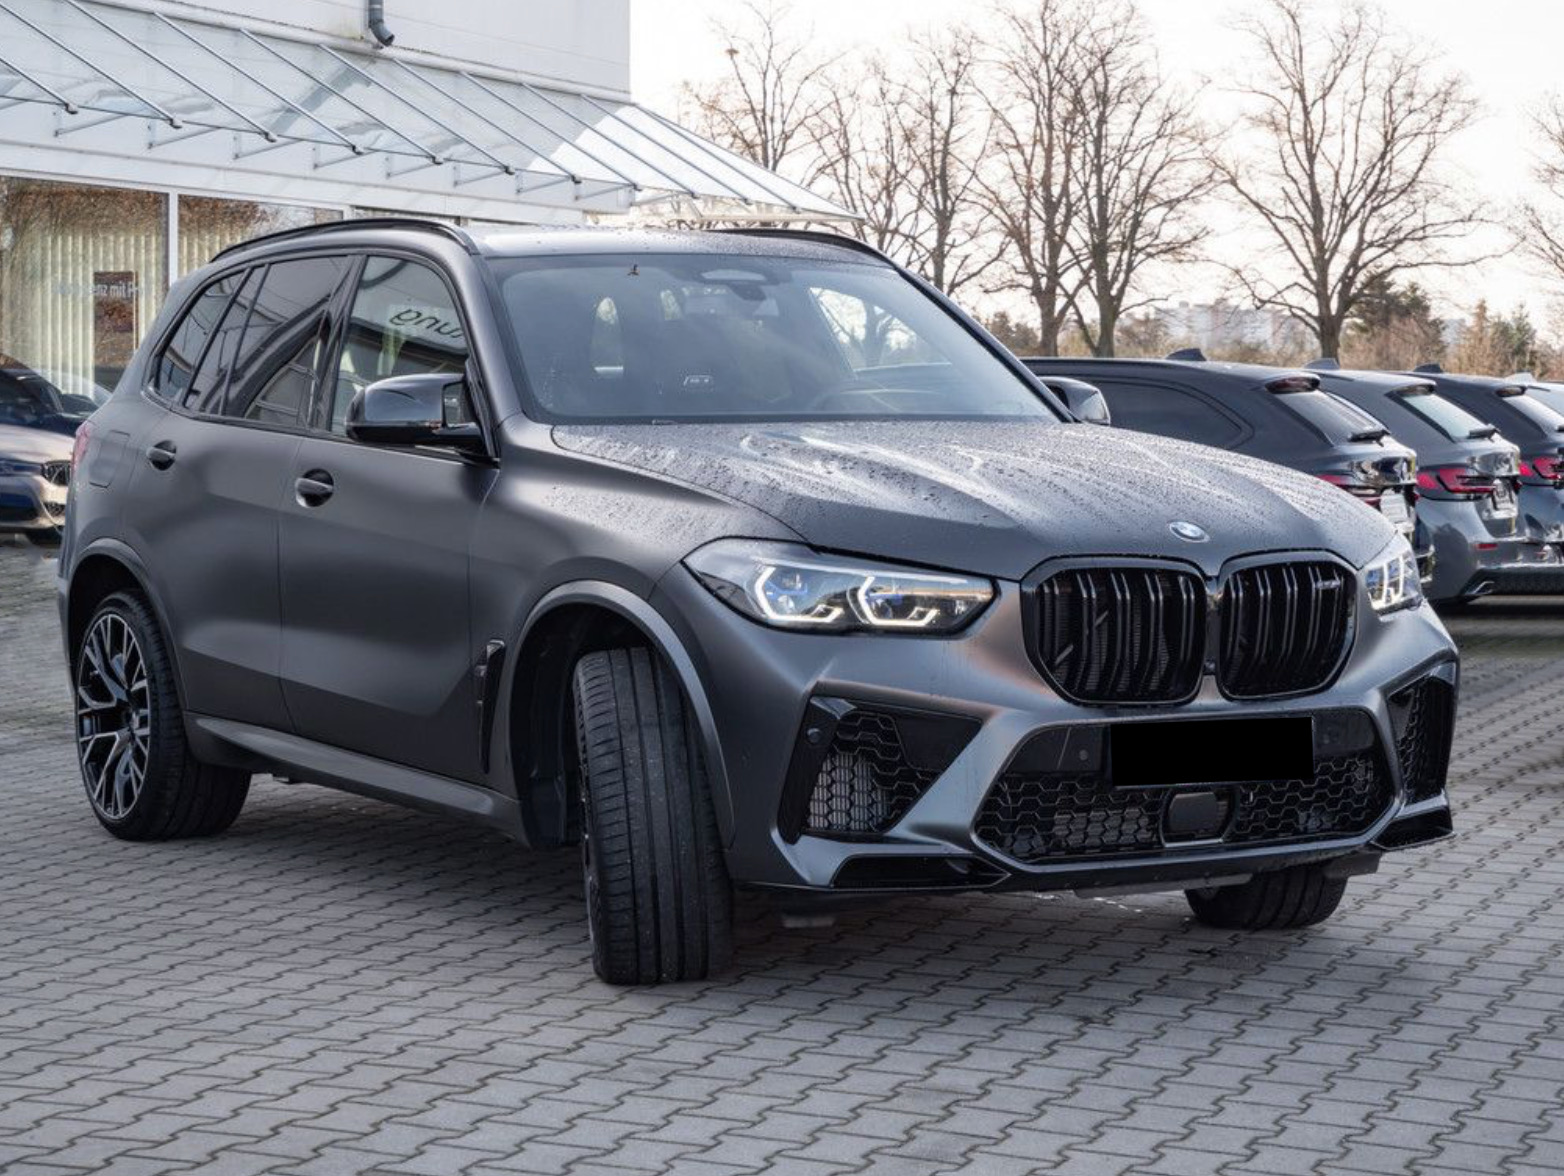 BMW X5 M Competition | předváděcí | SUV | benzin | německé auto | skladem | maximální výbava | nákup online | super cena  | autoibuy.com